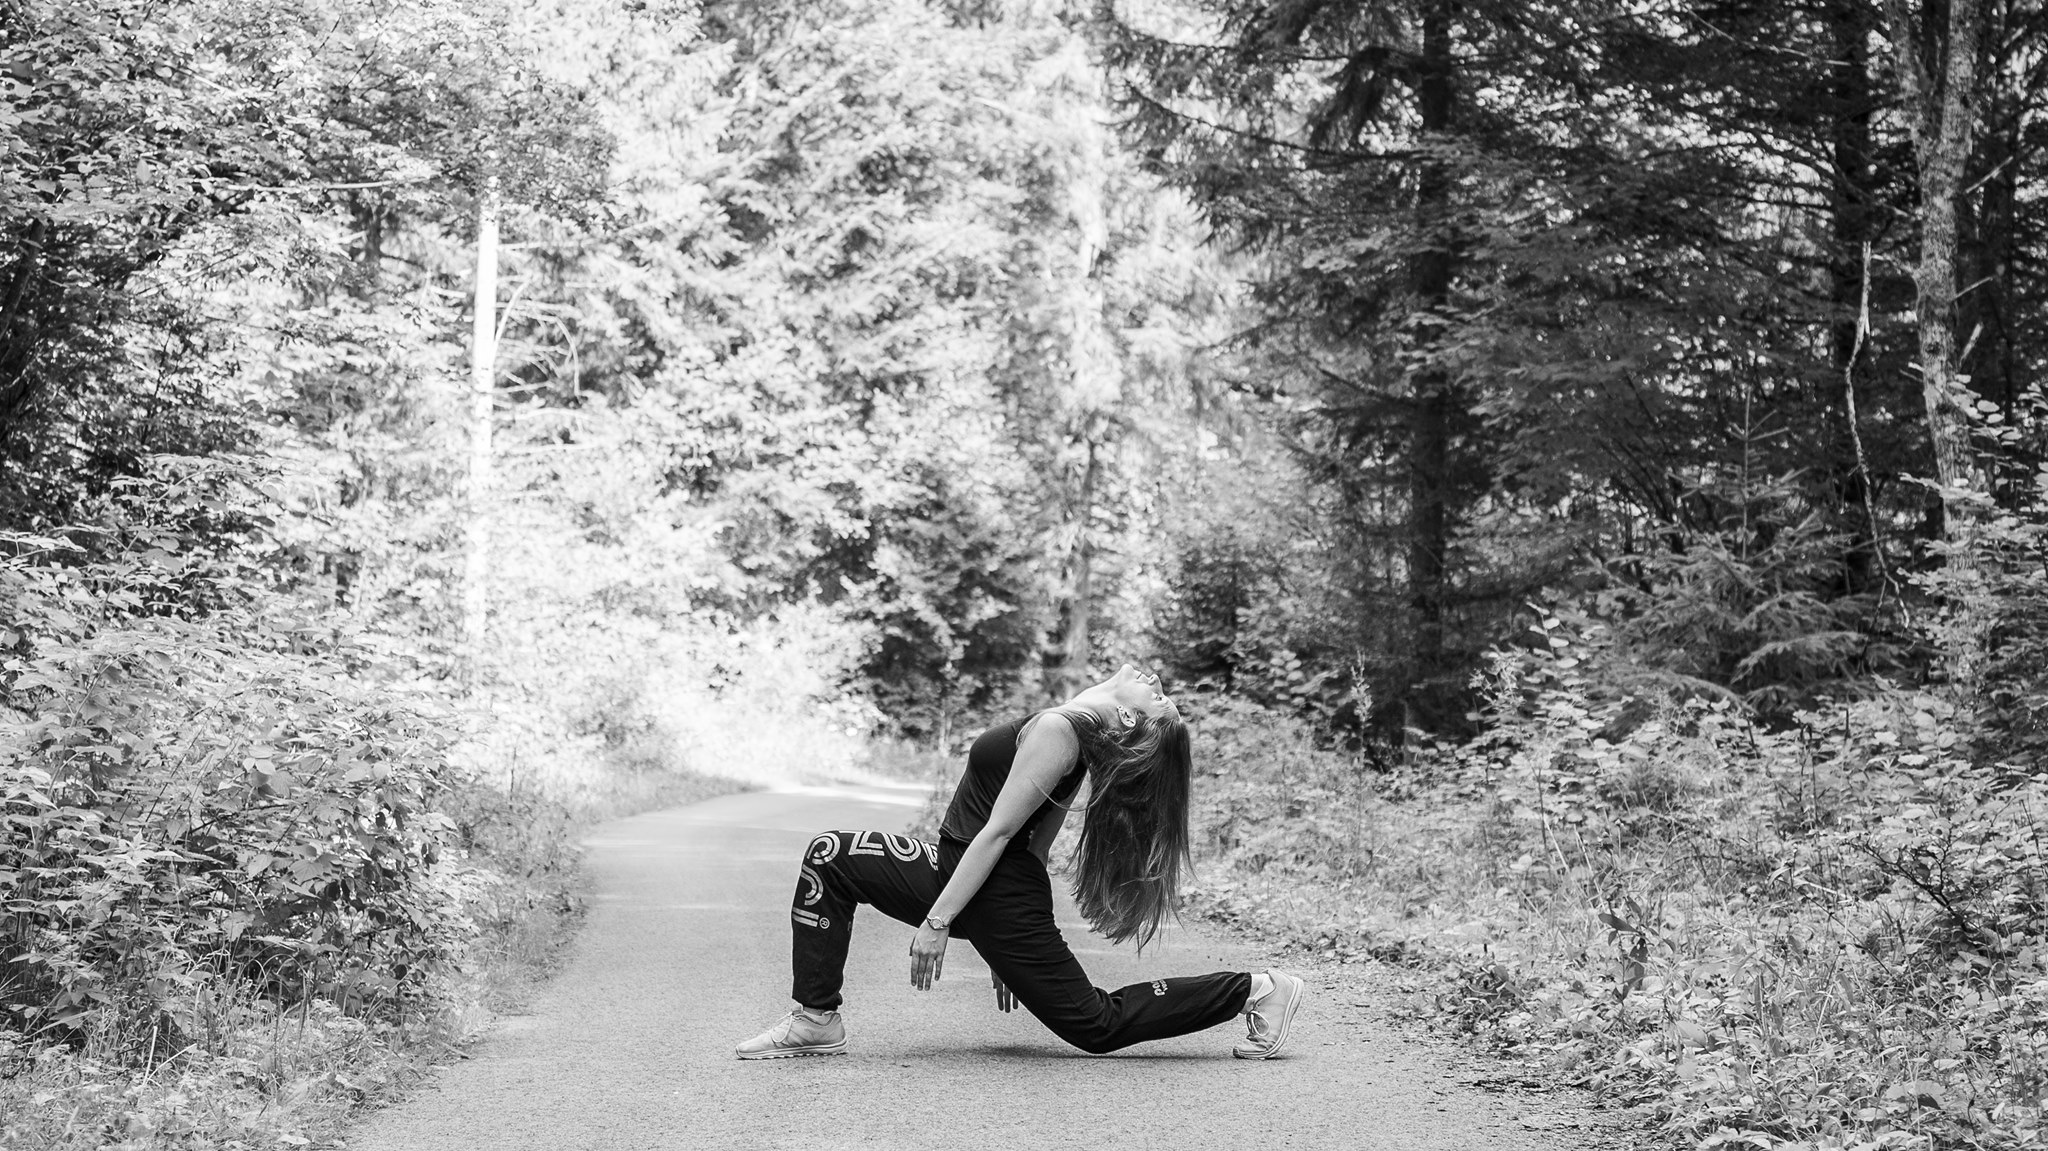 Photographie en niveau de gris de Cécile Reiter qui danse au milieu d'une route dans une forêt du Jura